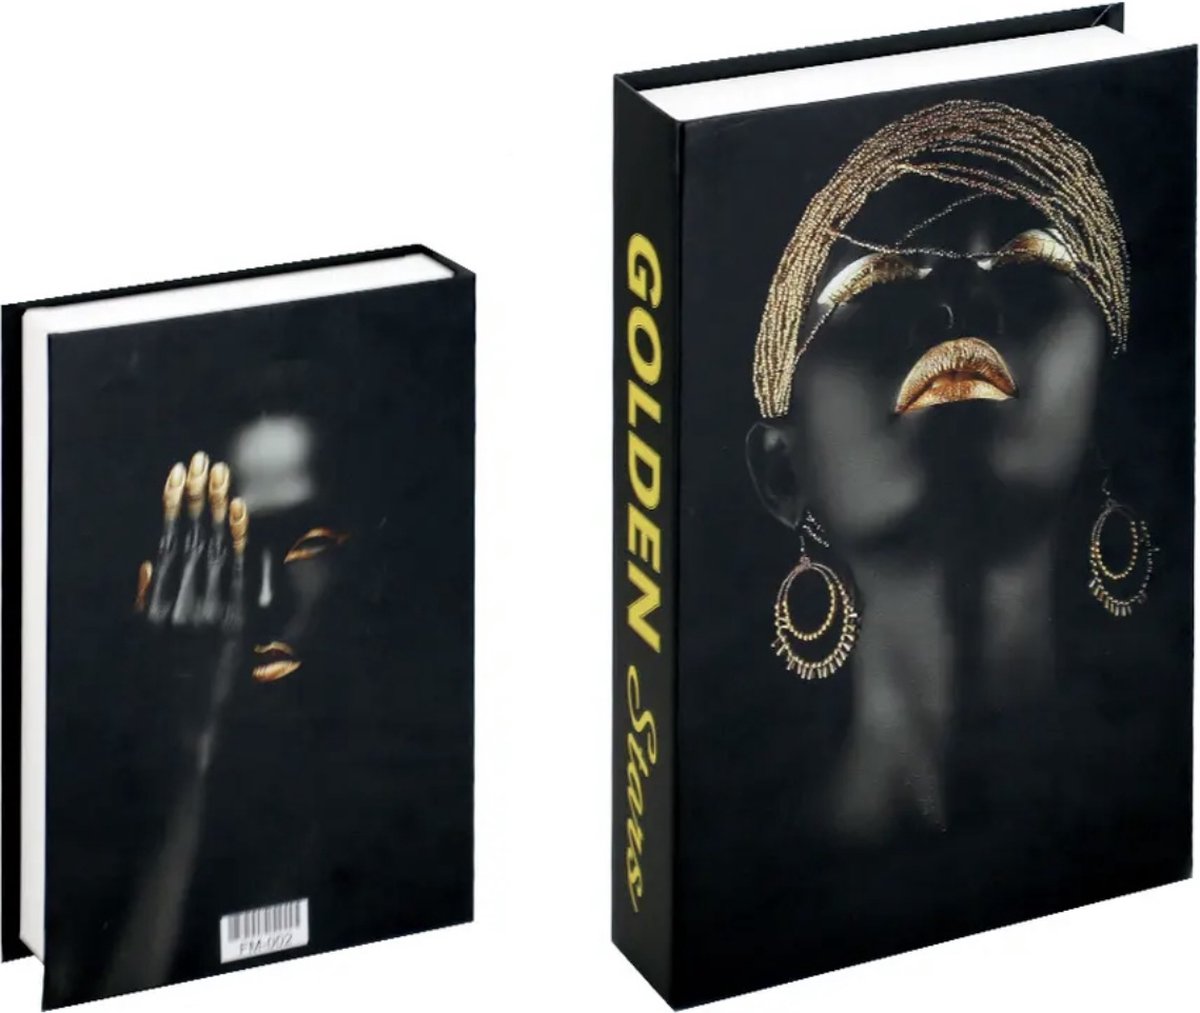 Opberg boek - Golden - zwart en goud - Opbergbox - Opbergdoos - Decoratie woonkamer - Boeken - Nep boek - Opbergboek